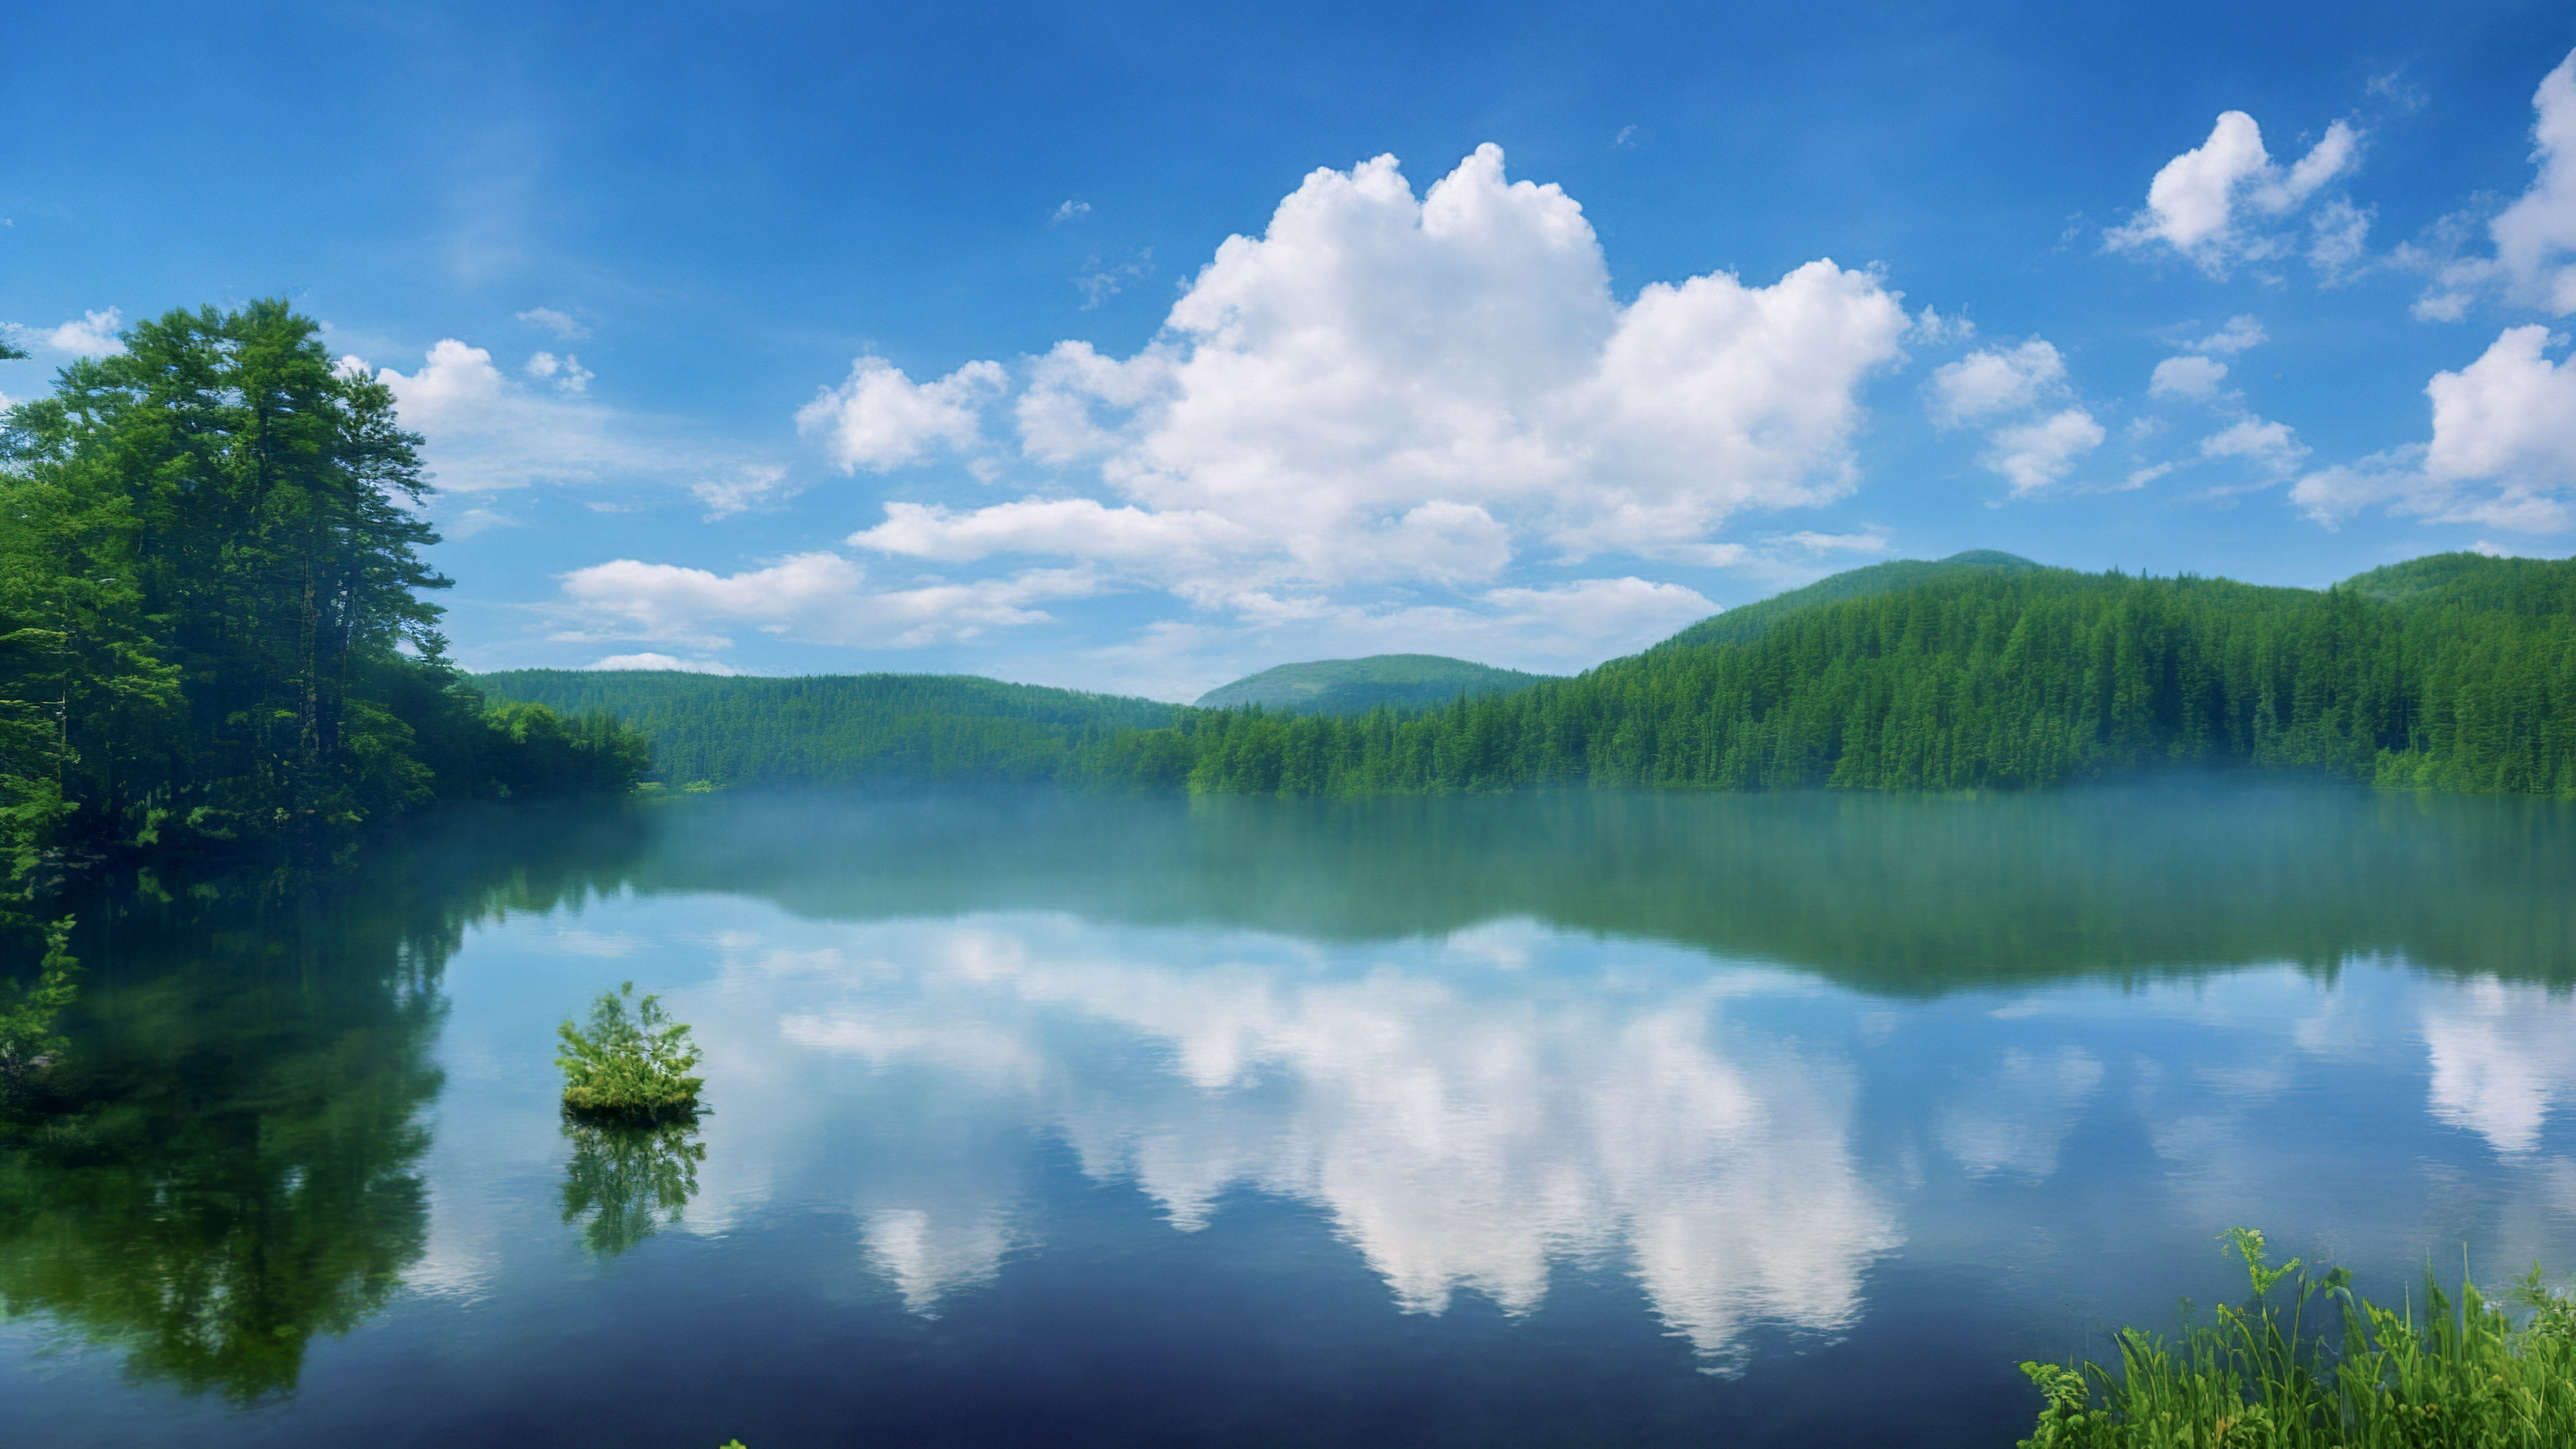 Admirez l'élégance de notre fond d'écran de ciel mignon, présentant un lac serein reflétant un ciel parsemé de nuages, entouré de forêts verdoyantes, et ressentez la tranquillité s'infiltrer dans votre espace numérique.